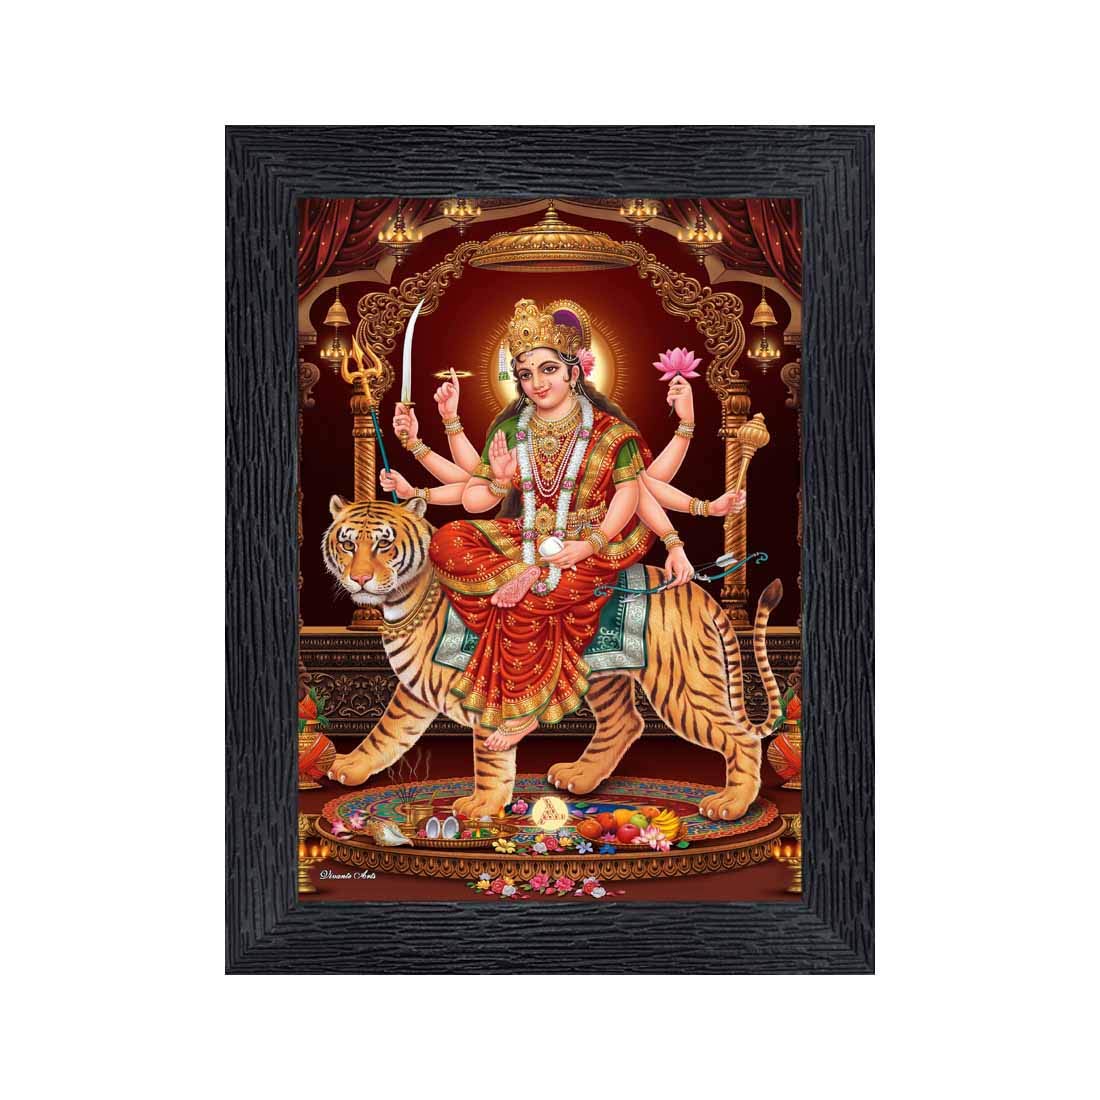 Xpression Decor Durga Maa Religious Wood Photo Frames with Acrylic Sheet-Stumbit Spirituality